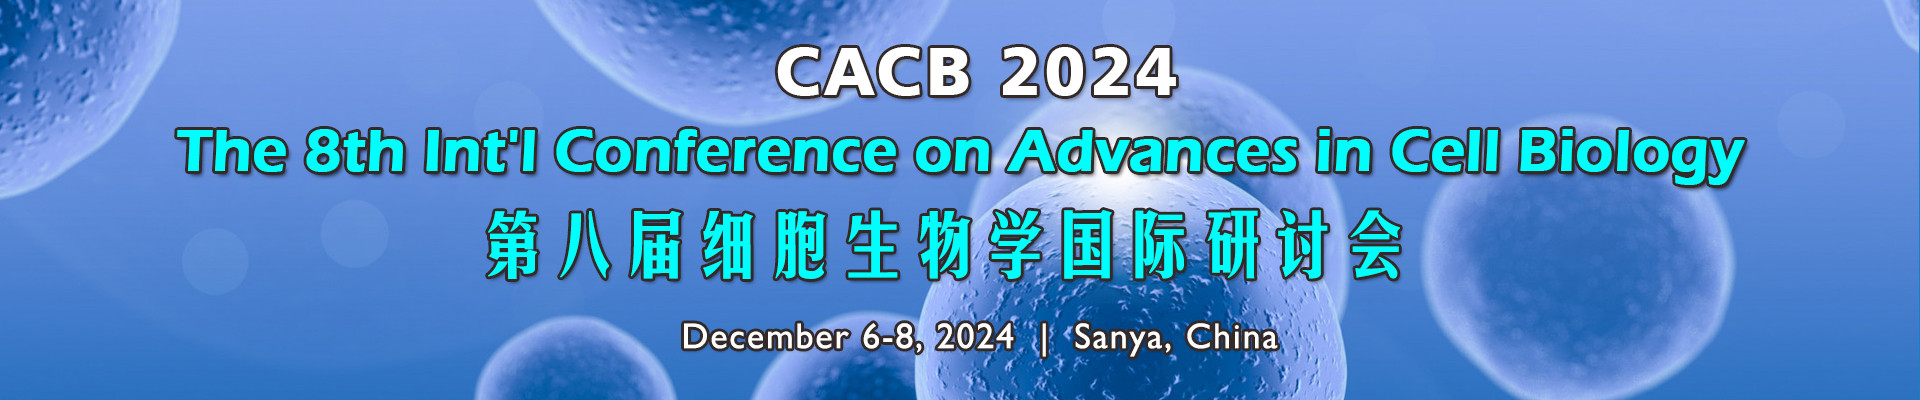 第八届细胞生物学新进展国际研讨会 (CACB 2024)